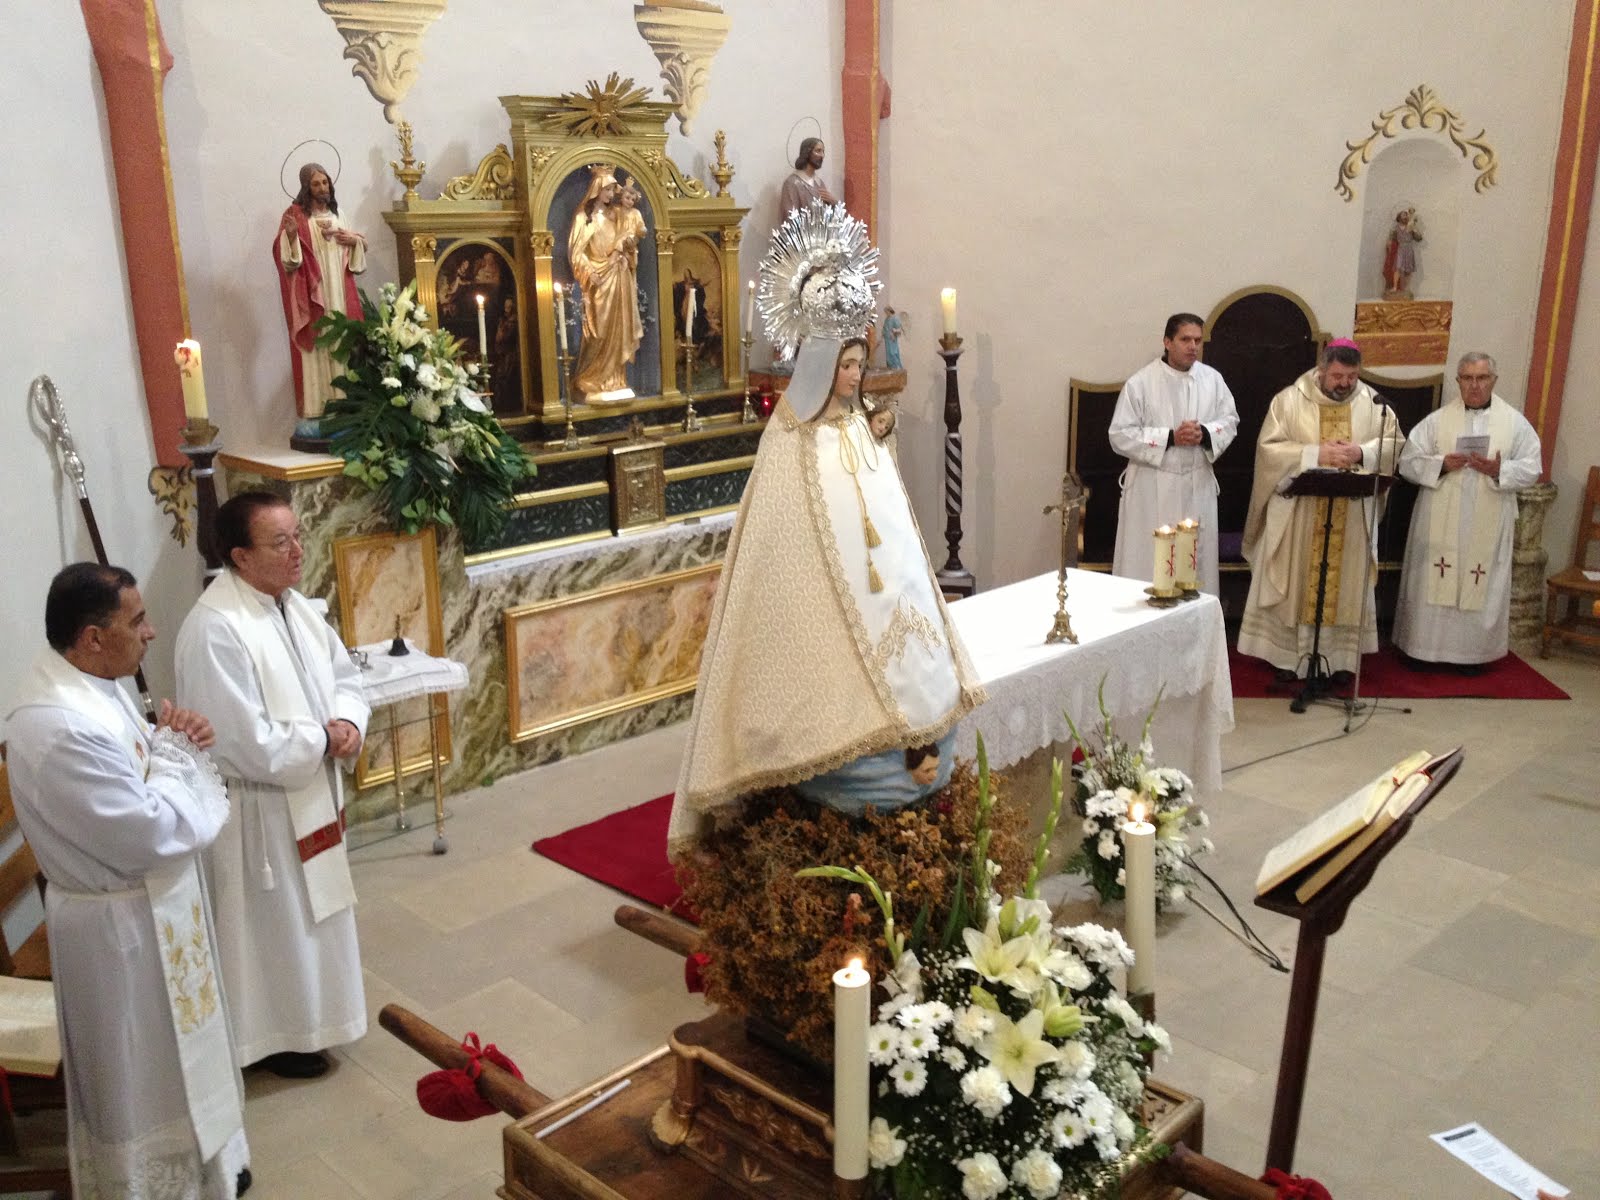 Fotogaleria: La Virgen de la Aliaga visita La Hoz de la Vieja. Diciembre 2013